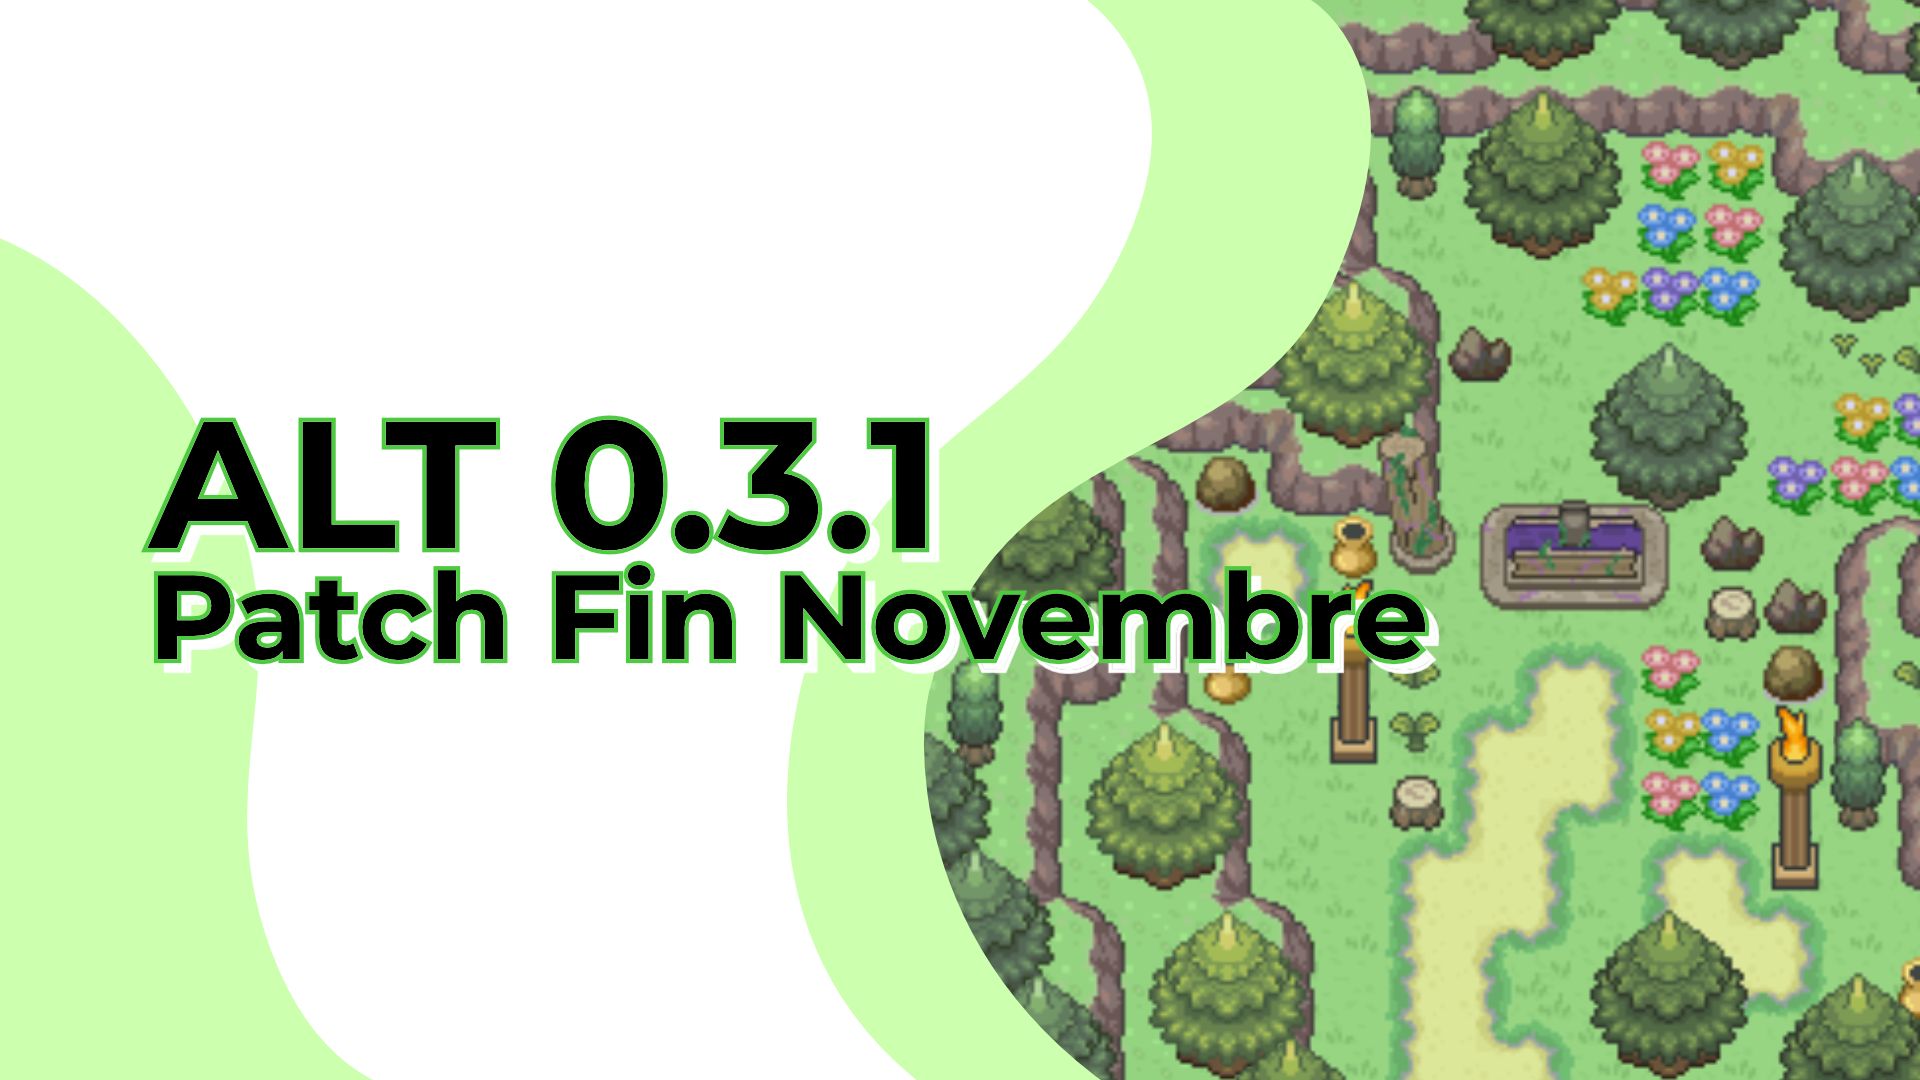 Miniature de Alt 0.3.1 - Patch de fin novembre